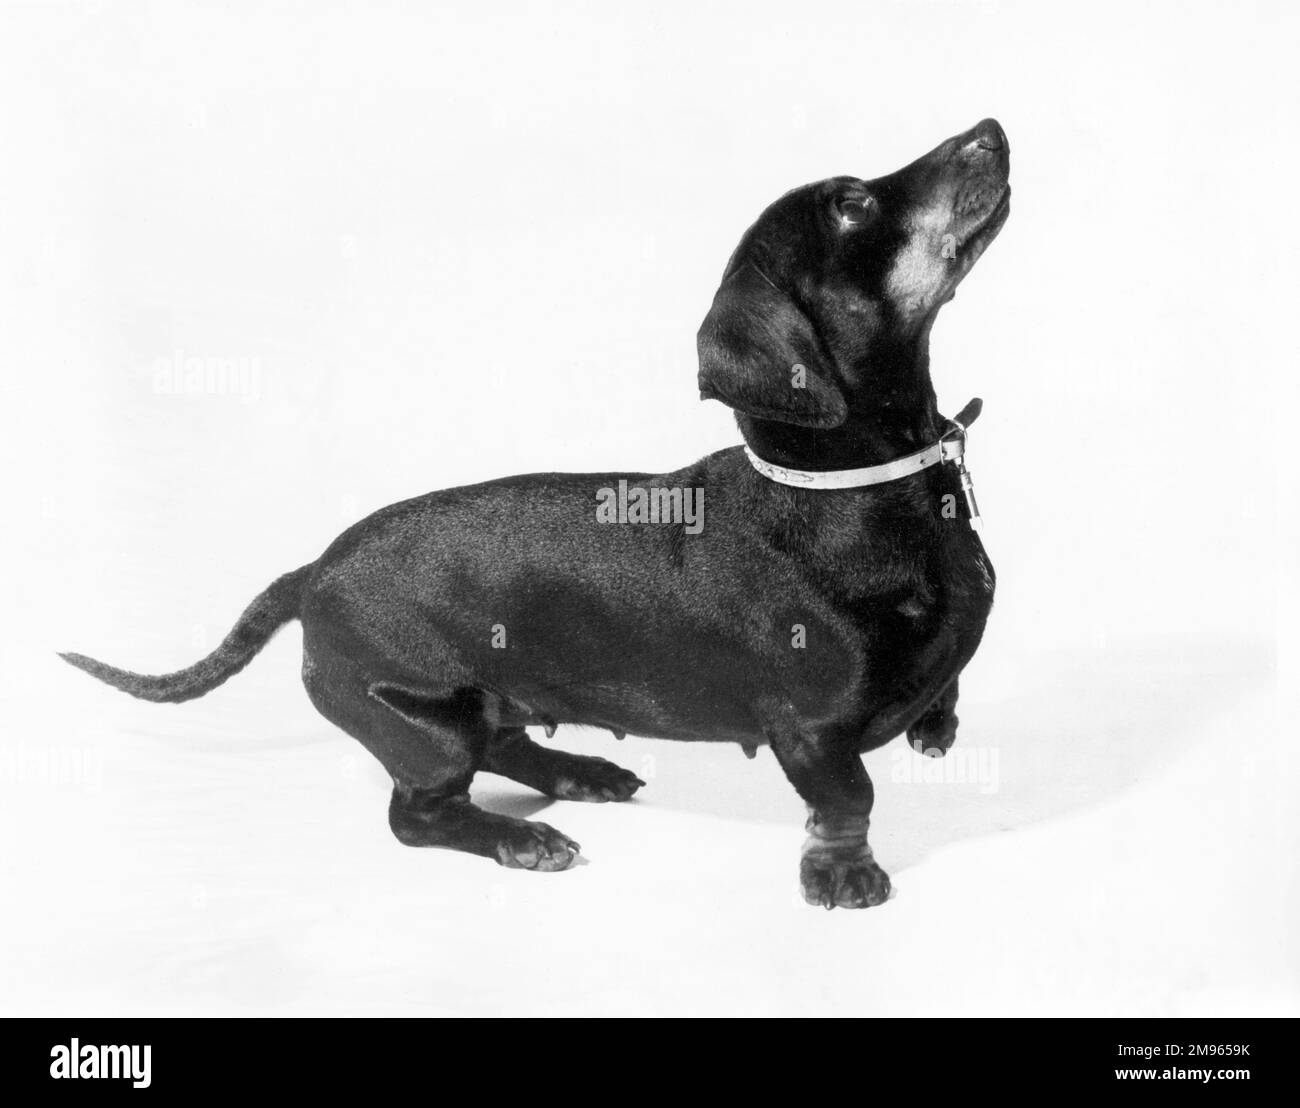 A dachshund. Stock Photo